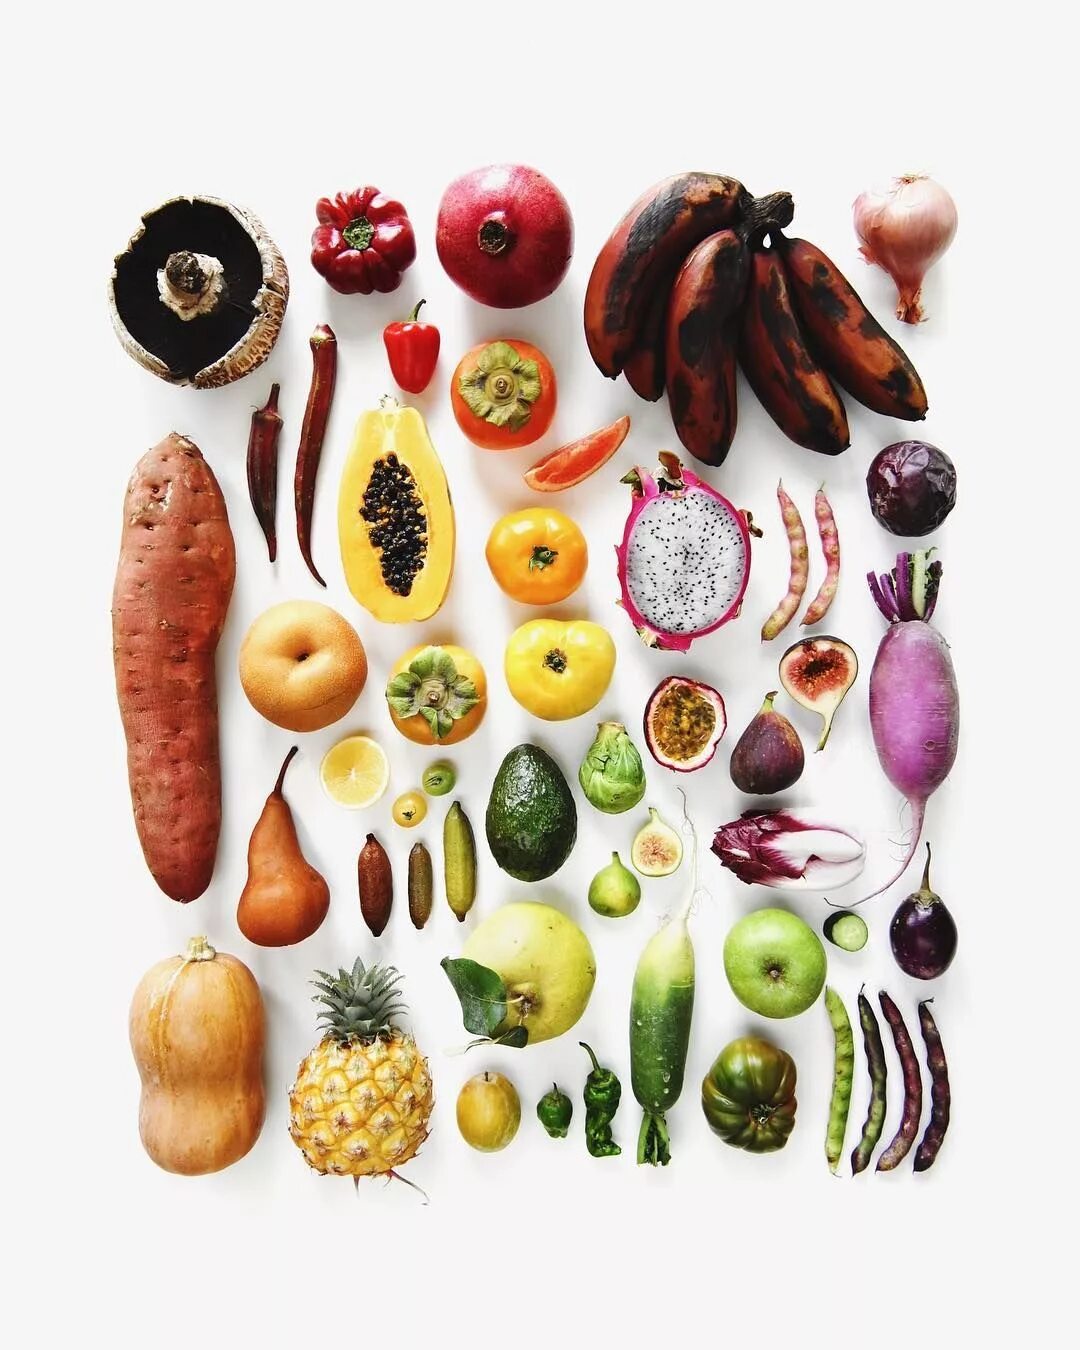 Variety is the of life. Растительная пища. Еда растительная арт. Растительное питание. Энзимы из овощей и фруктов.